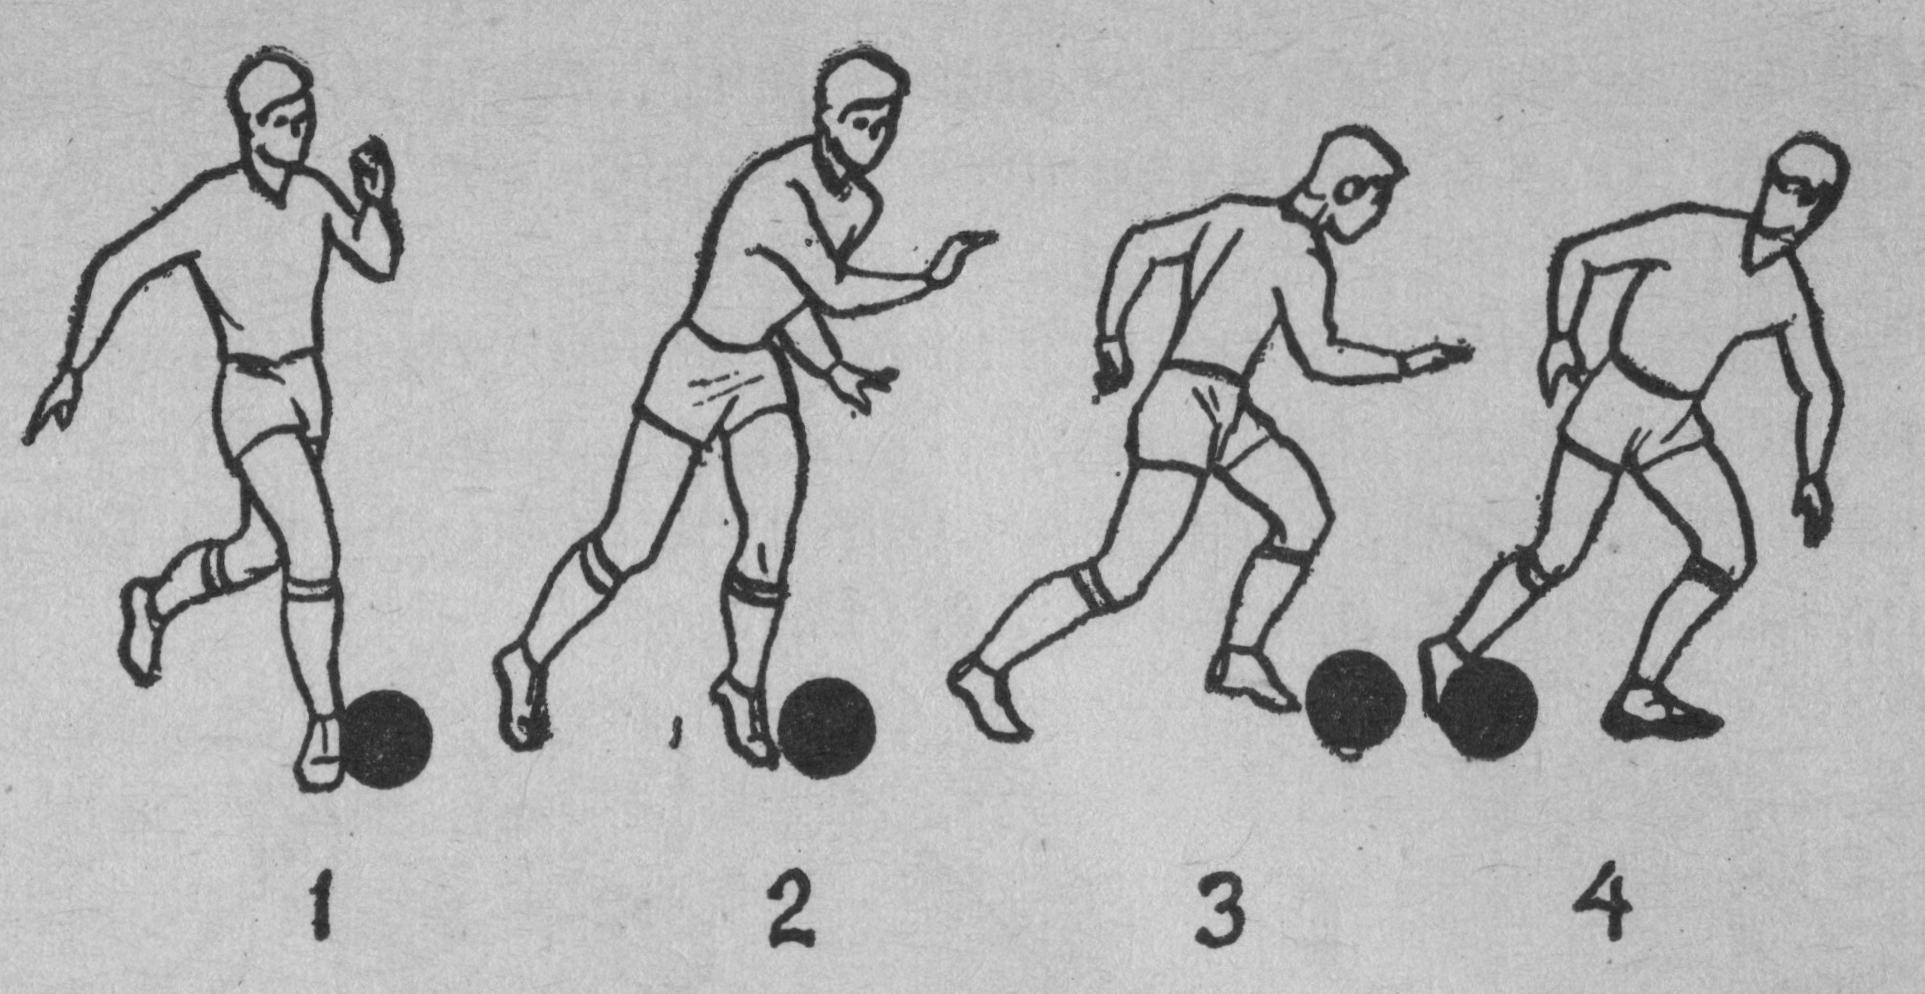 С мячом вправо. Ведение мяча ногой в футболе. Техники ведения мяча ногой в футболе. Приемы ведения мяча в футболе. Упражнения на технику ведения мяча в футболе.